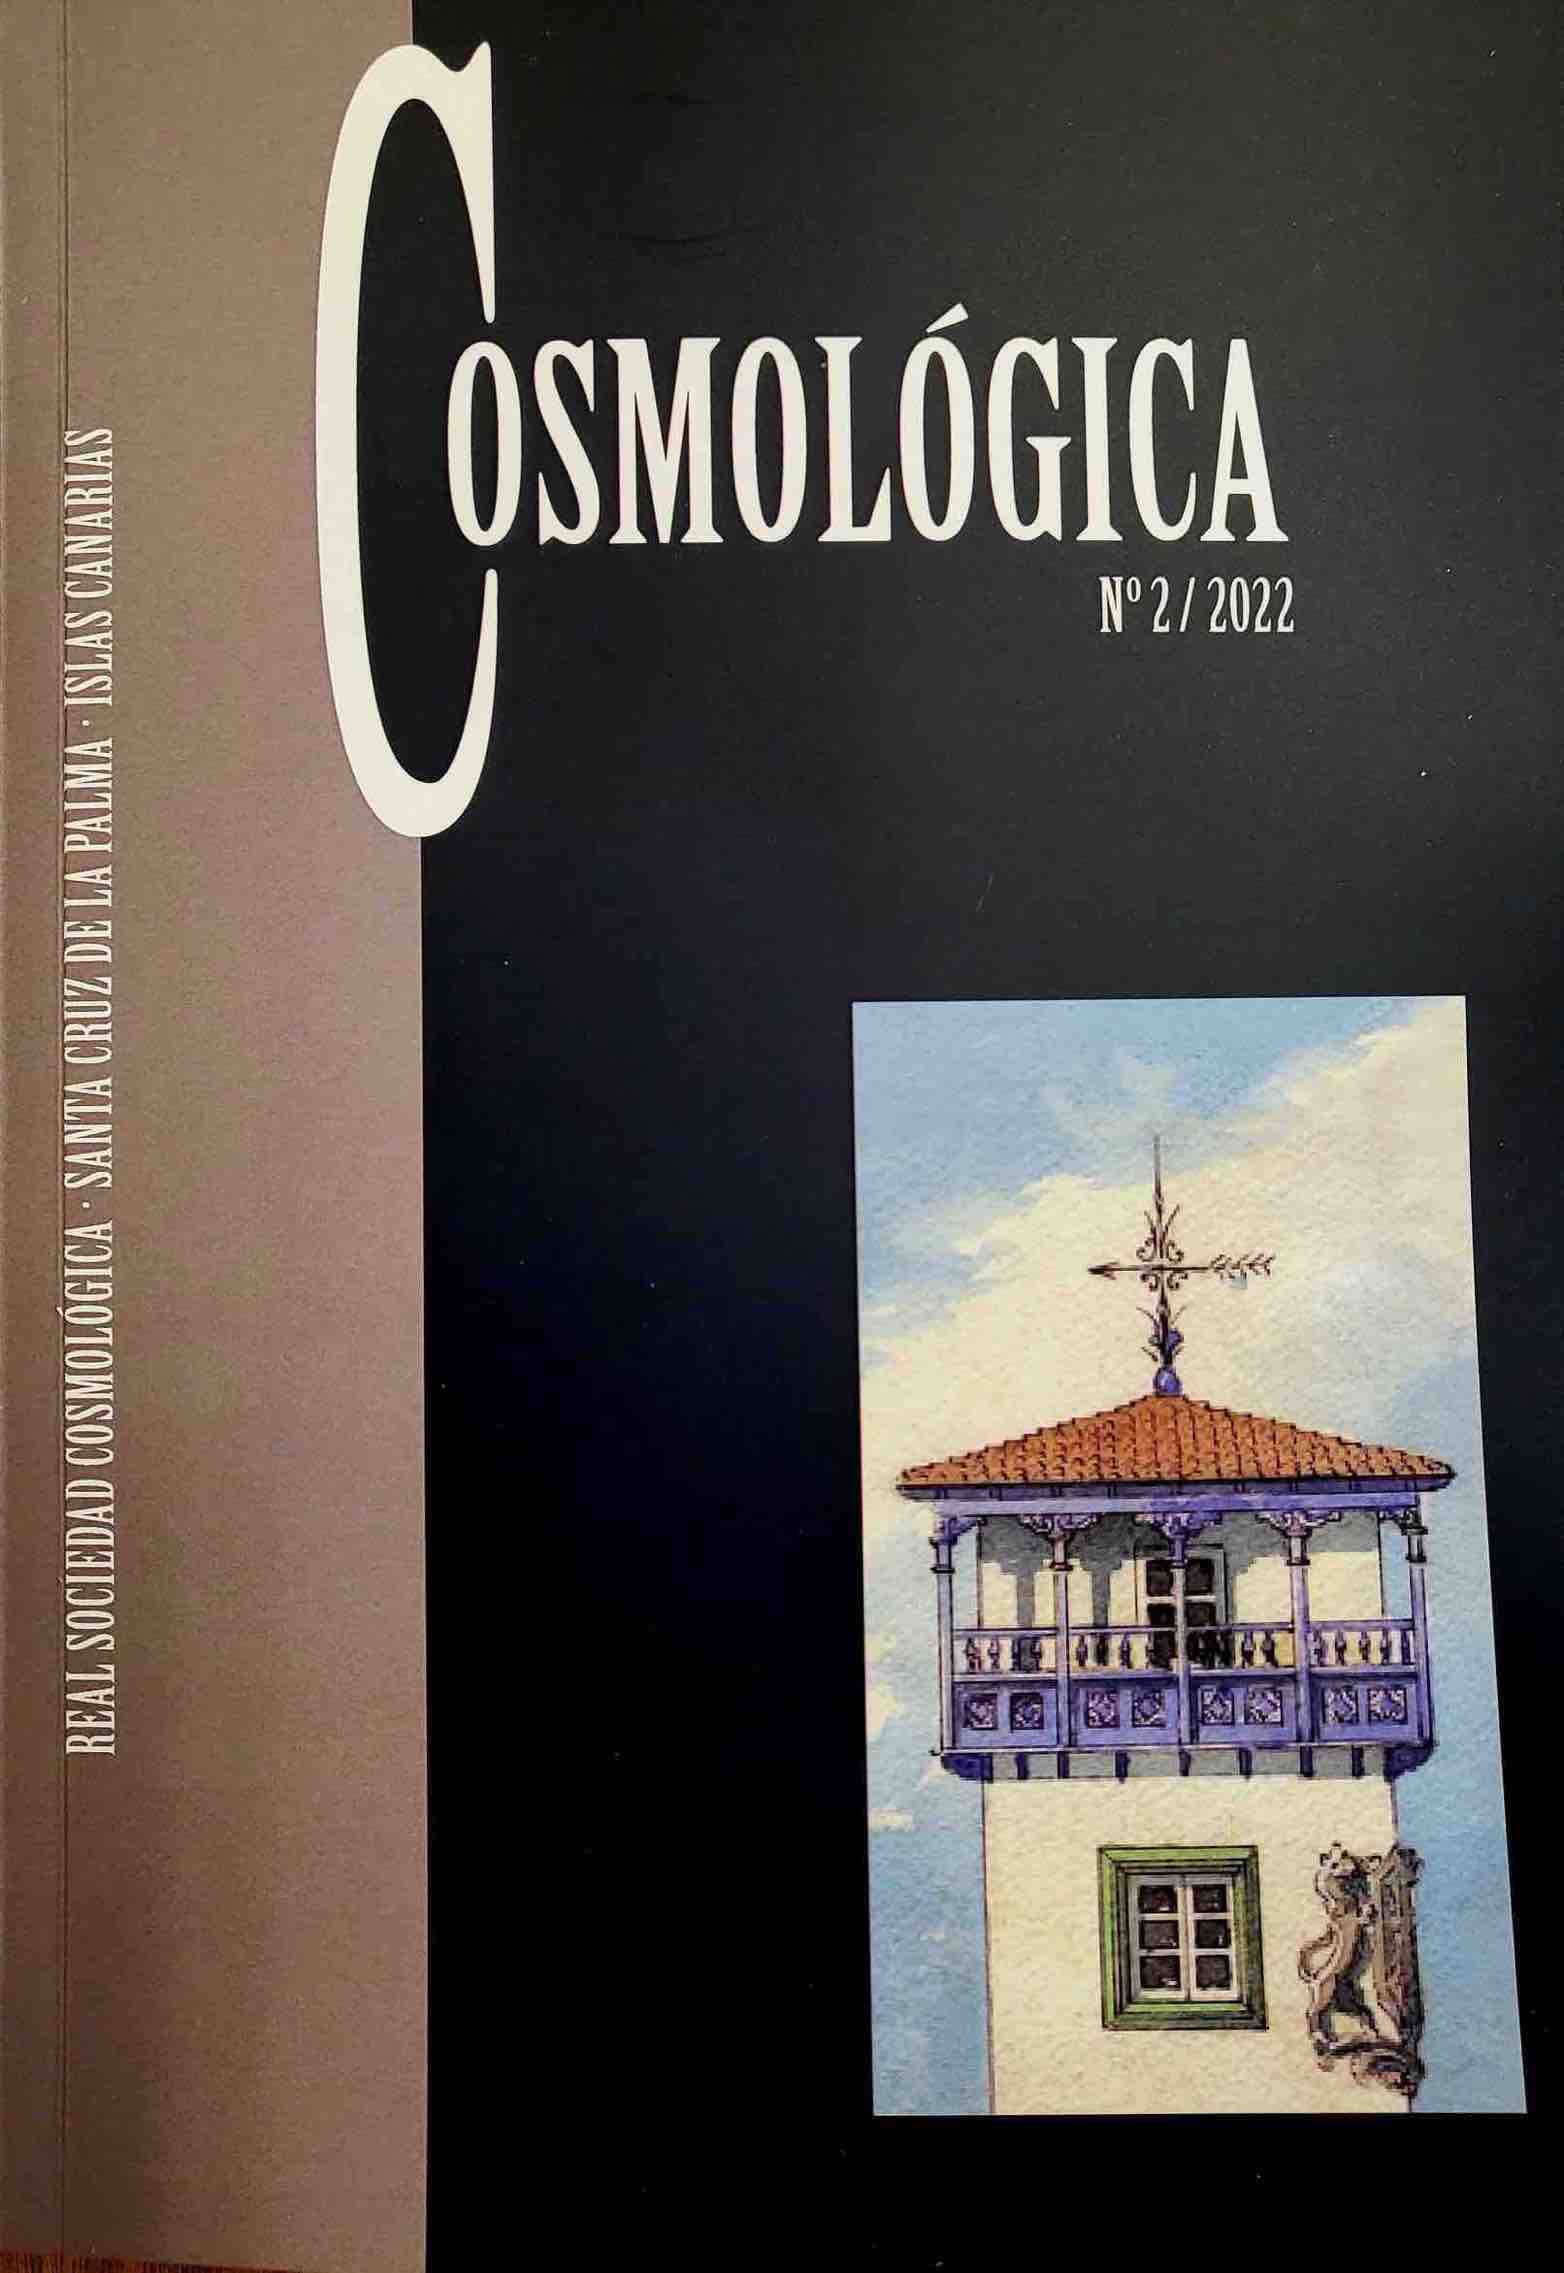 La Cosmológica presenta el sugundo número del Anuario Cosmológica